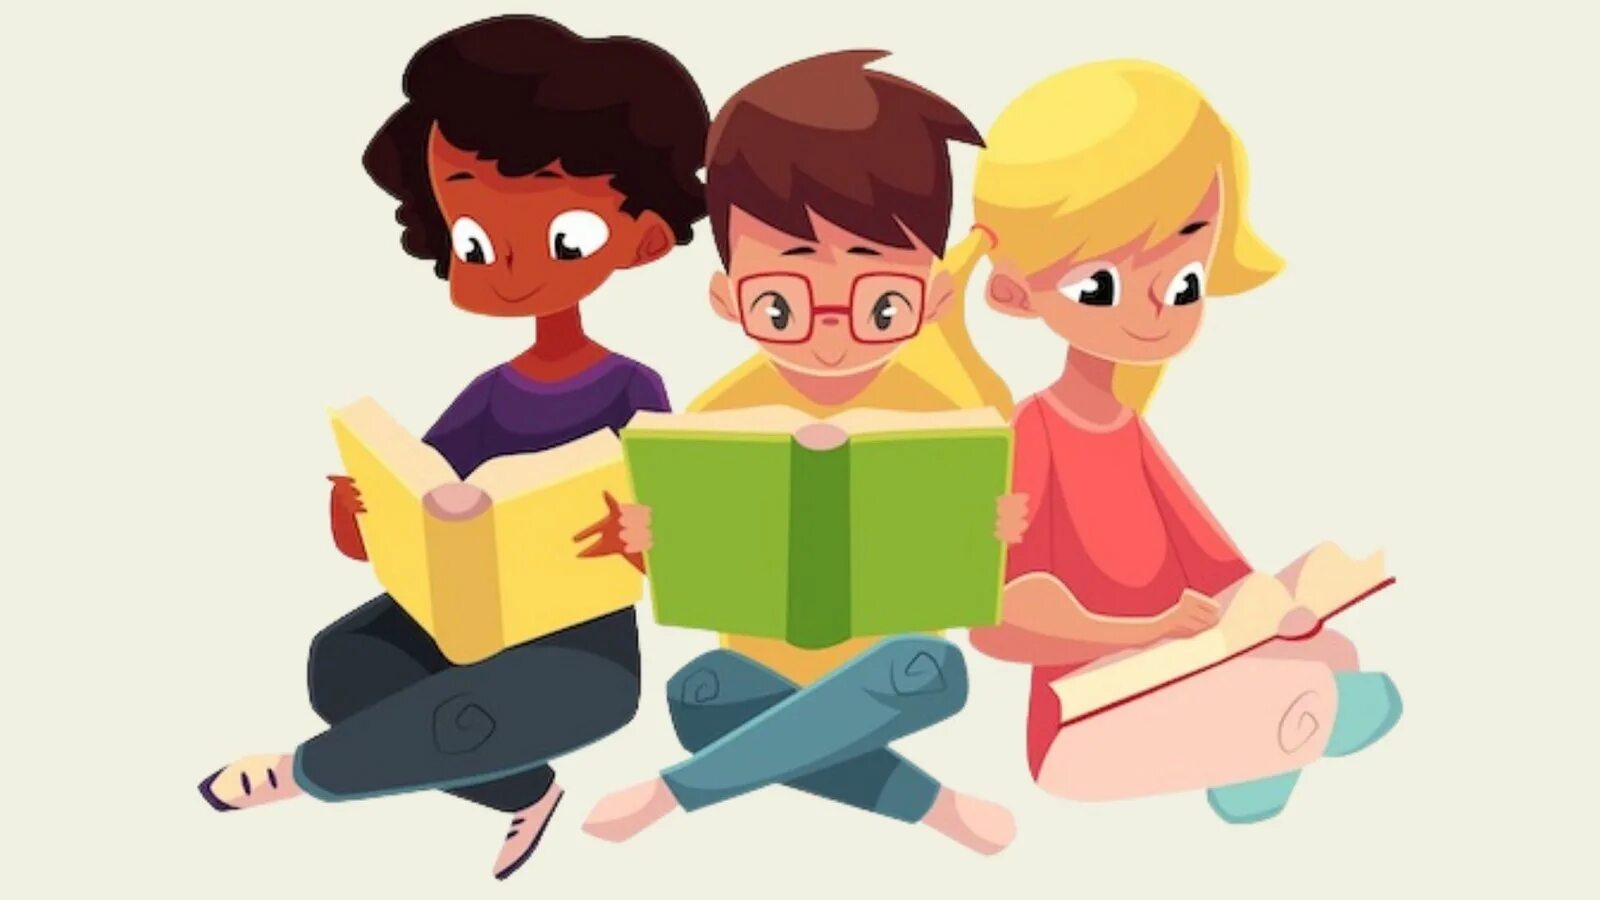 English thought reading. Чтение. Молодежь и чтение. Чтение книг. Чтение картинки для детей.